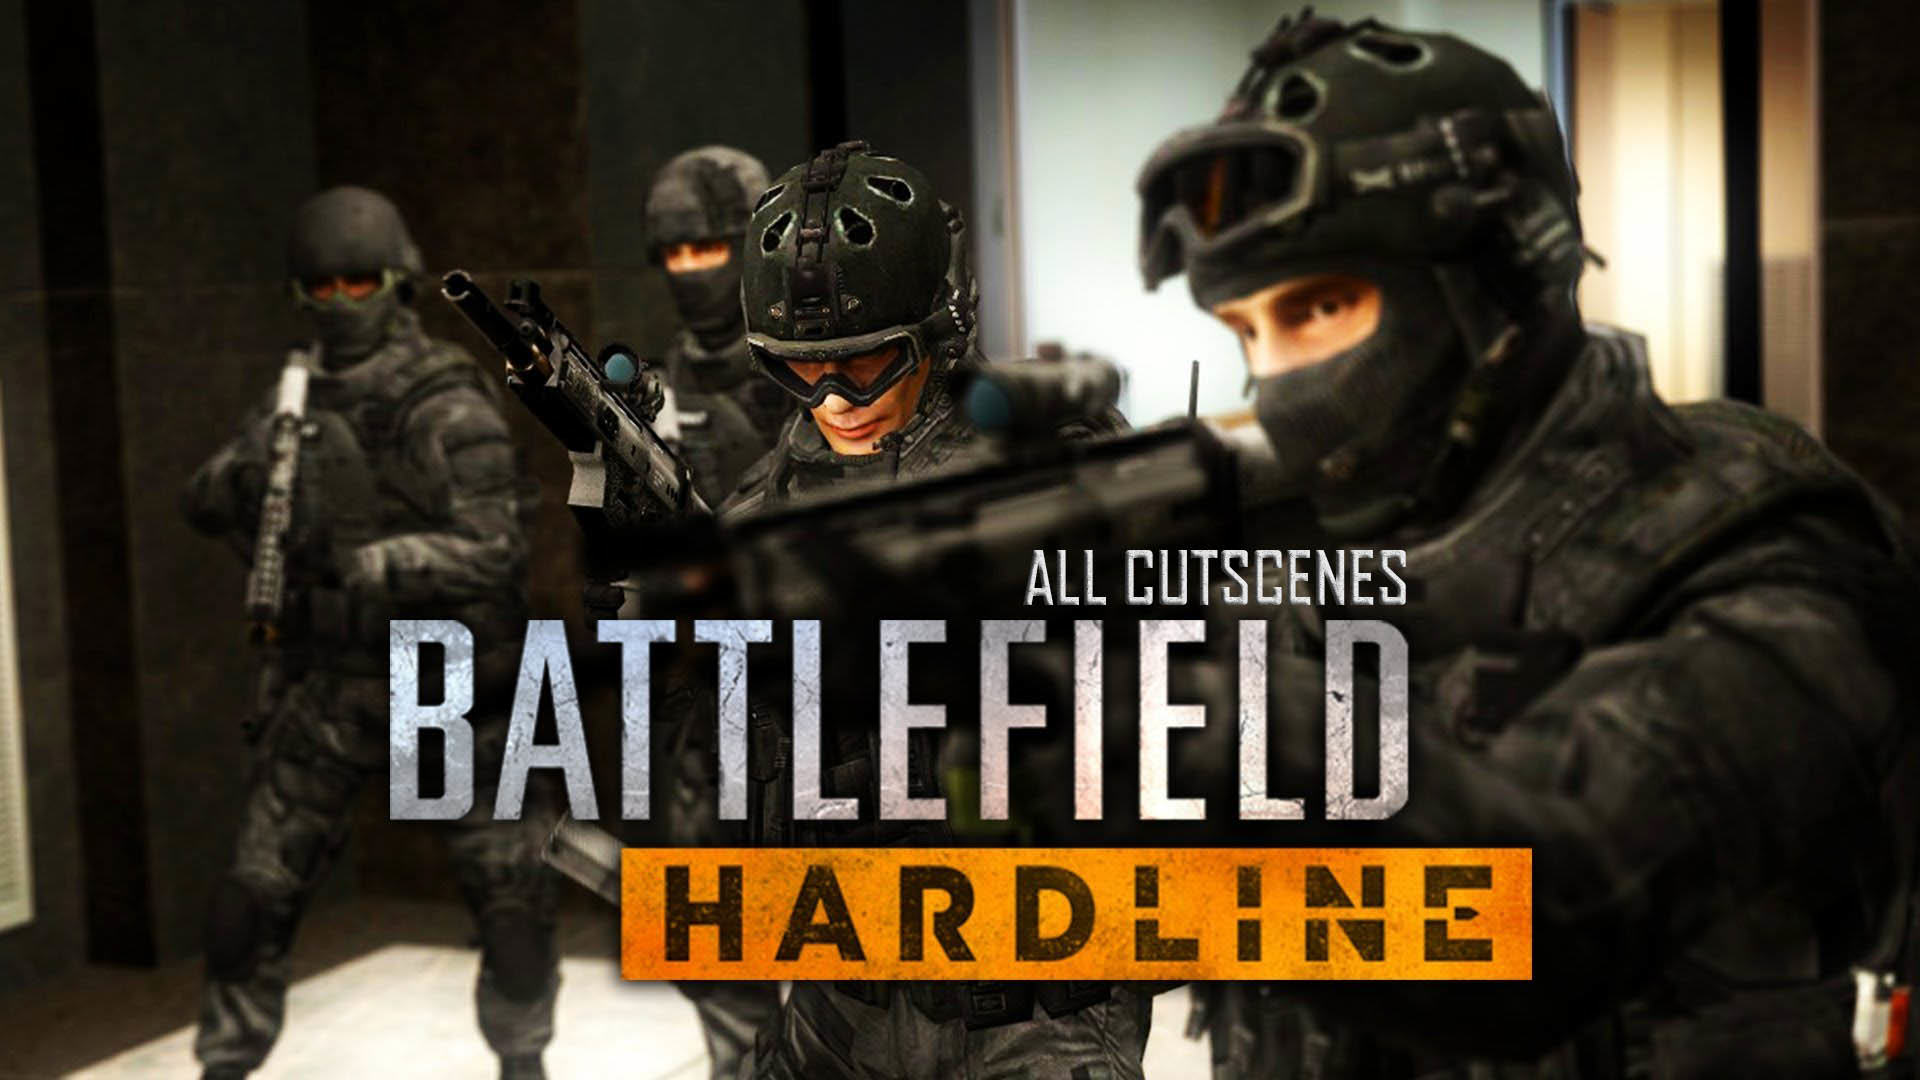 Battlefield Hardline Full Movie All Cutscenes 8